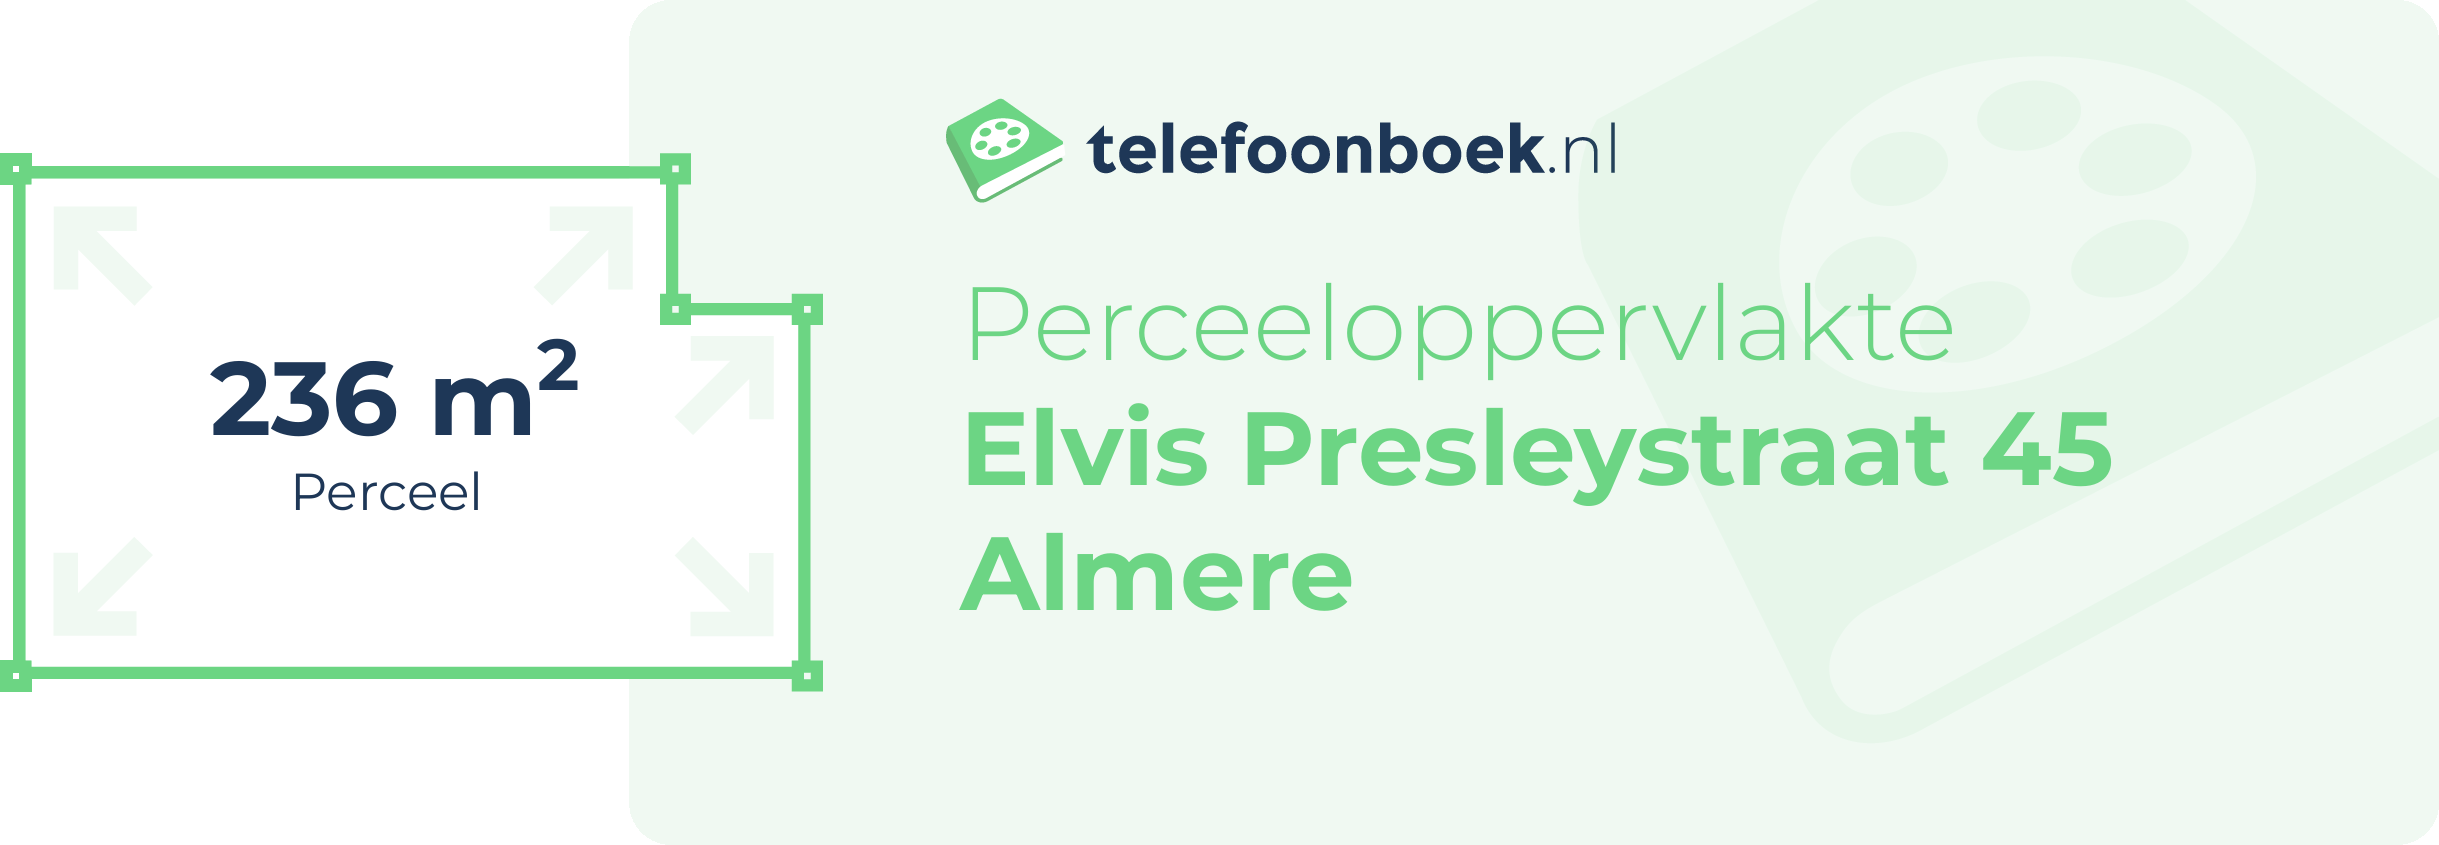 Perceeloppervlakte Elvis Presleystraat 45 Almere